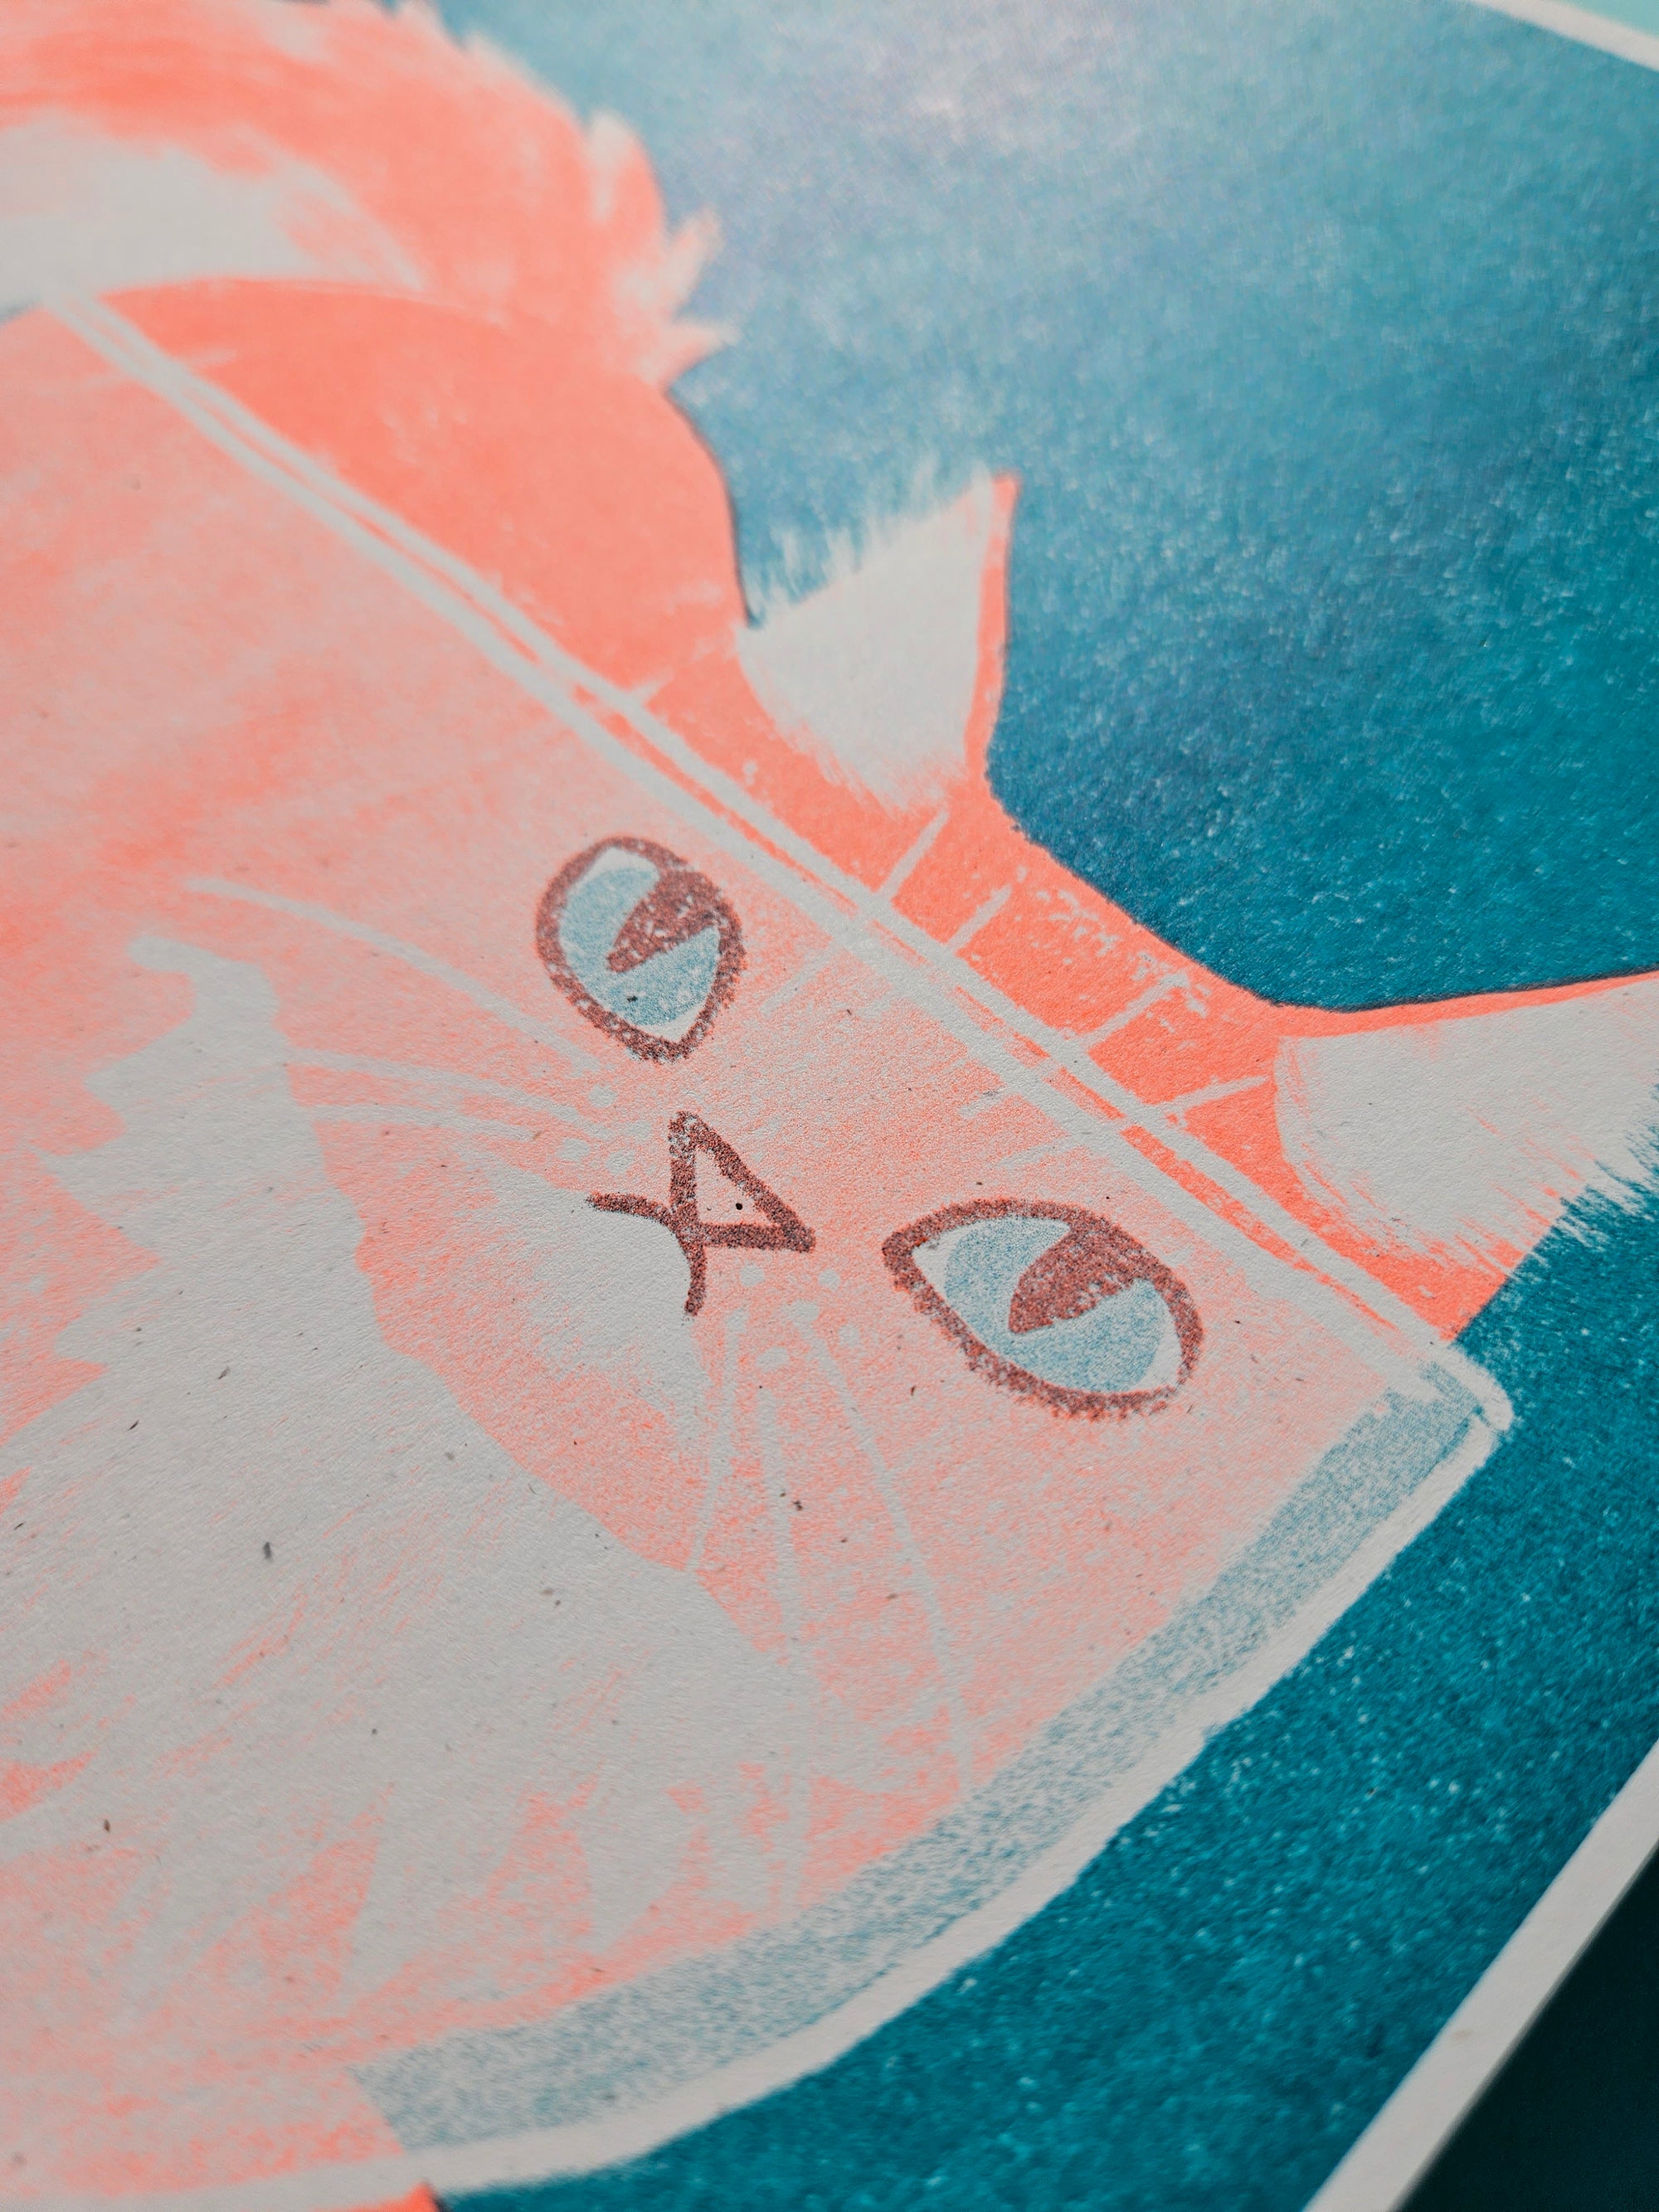 Orange Cat in a Bowl - Risograph Print